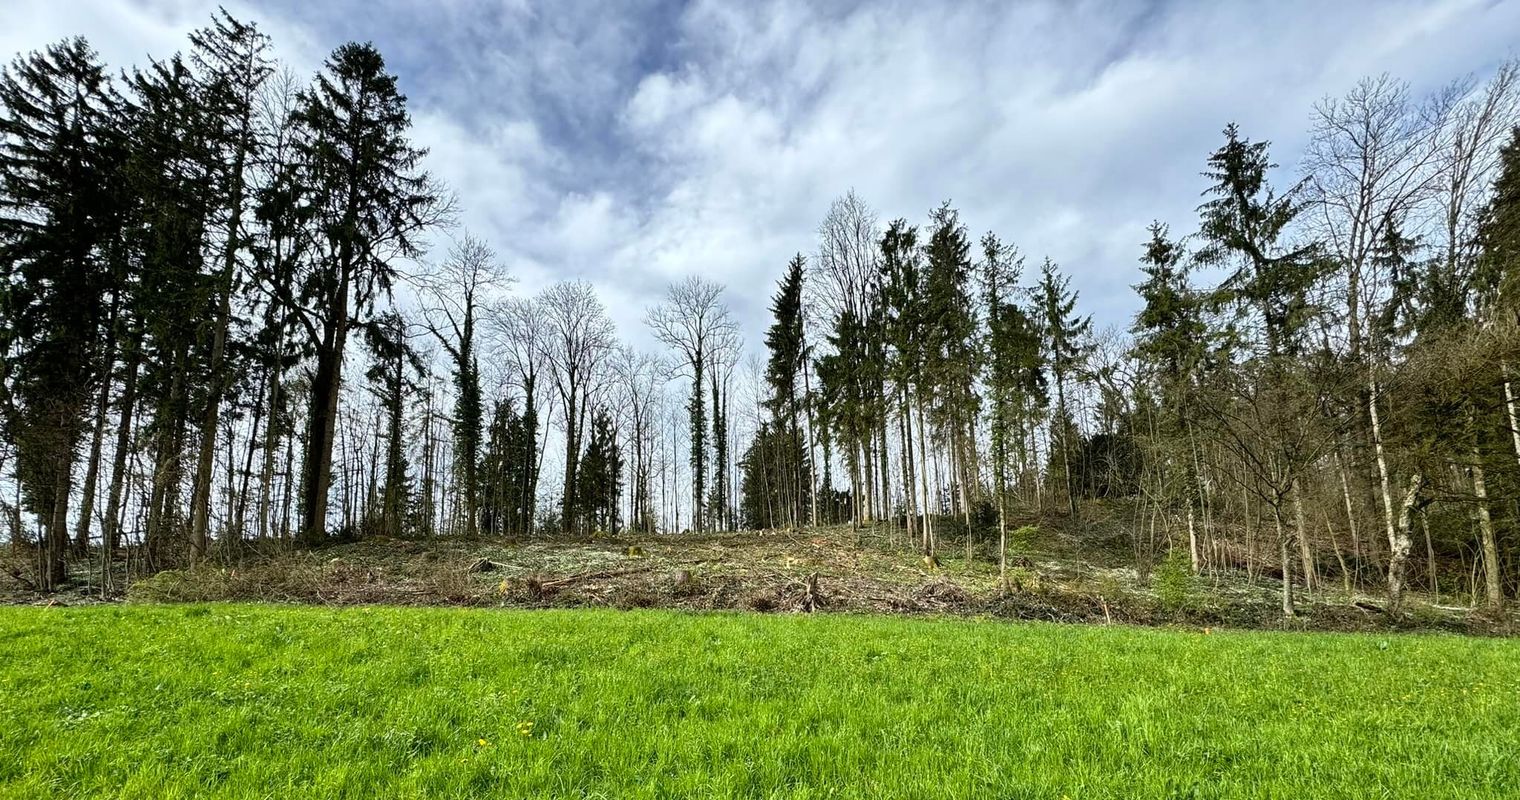 Viele Bäume gefällt – was geschieht in diesem Zuger Wald?